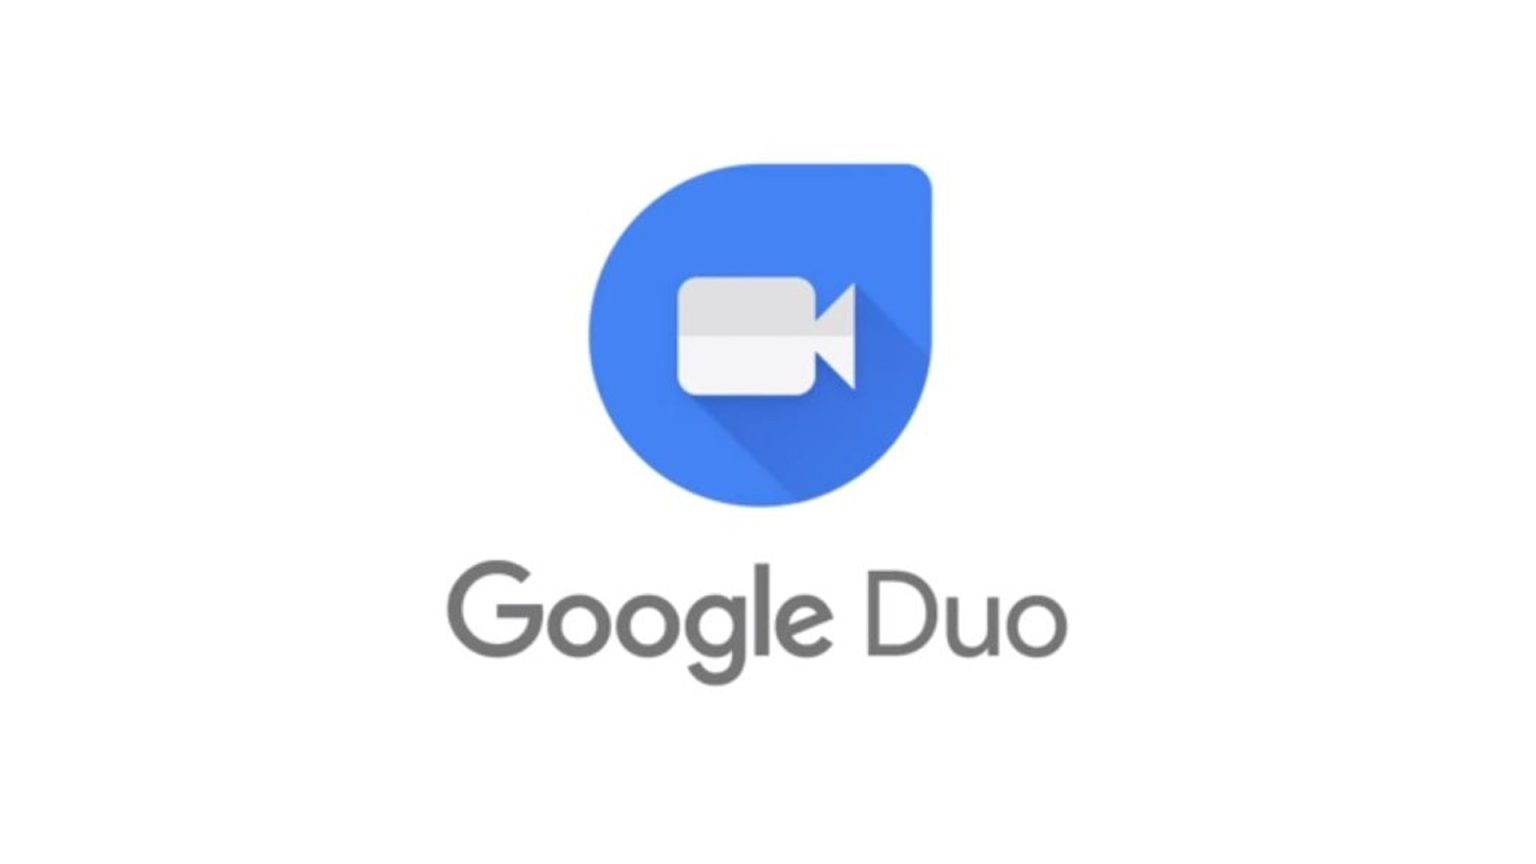 Google Duo ya está disponible en los SmartTV Neo Qled de Samsung. La firma coreana ha lanzado este vídeo para celebrarlo.